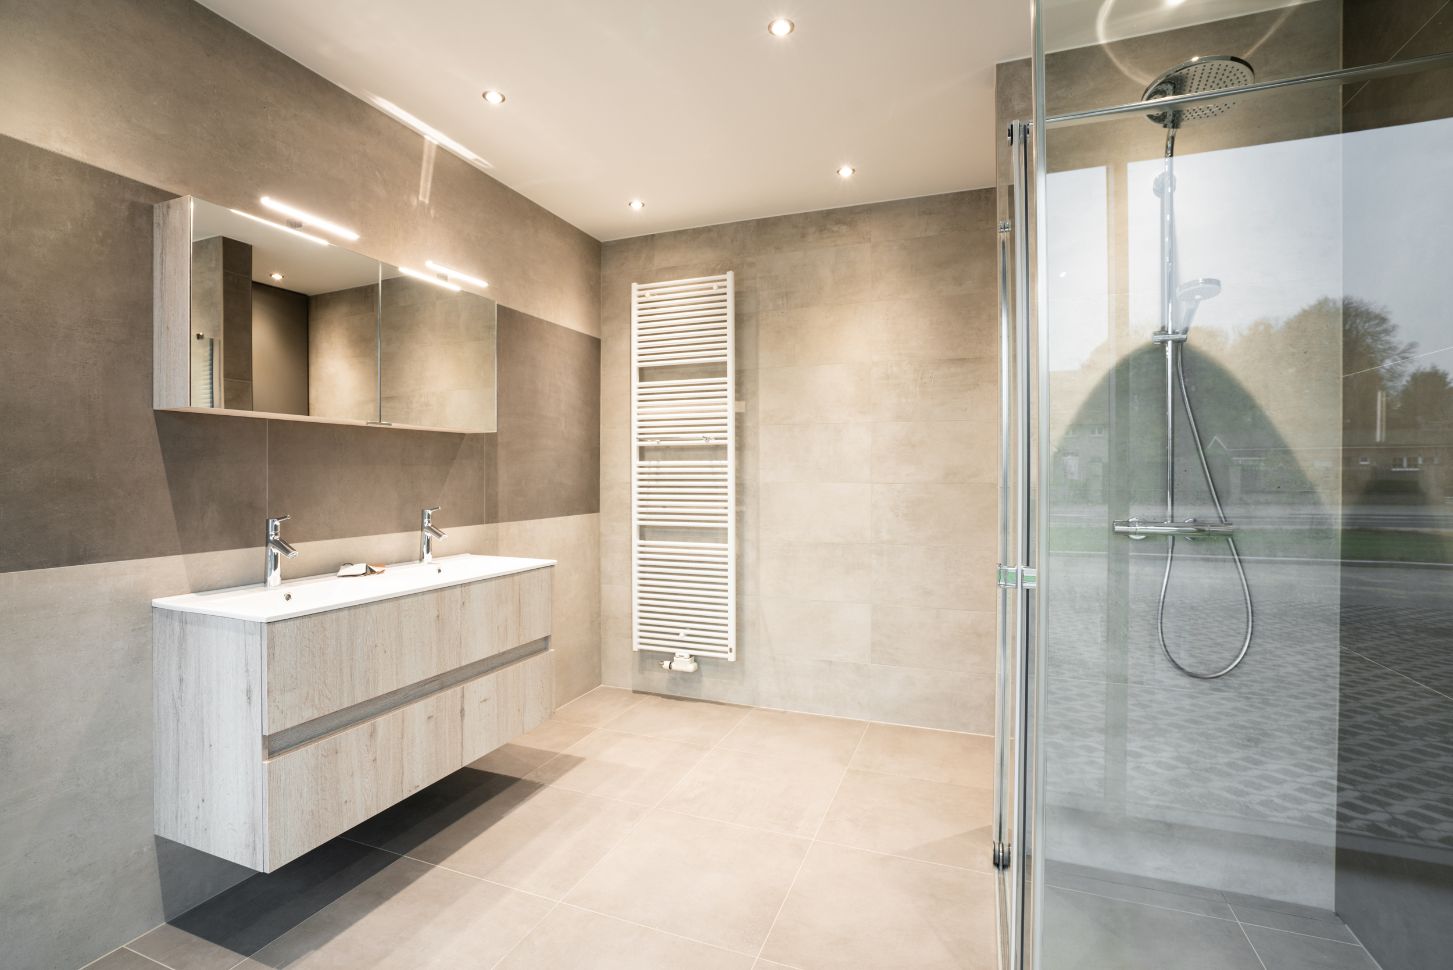 Badkamer in moderne stijl moderne badkamer renovatie